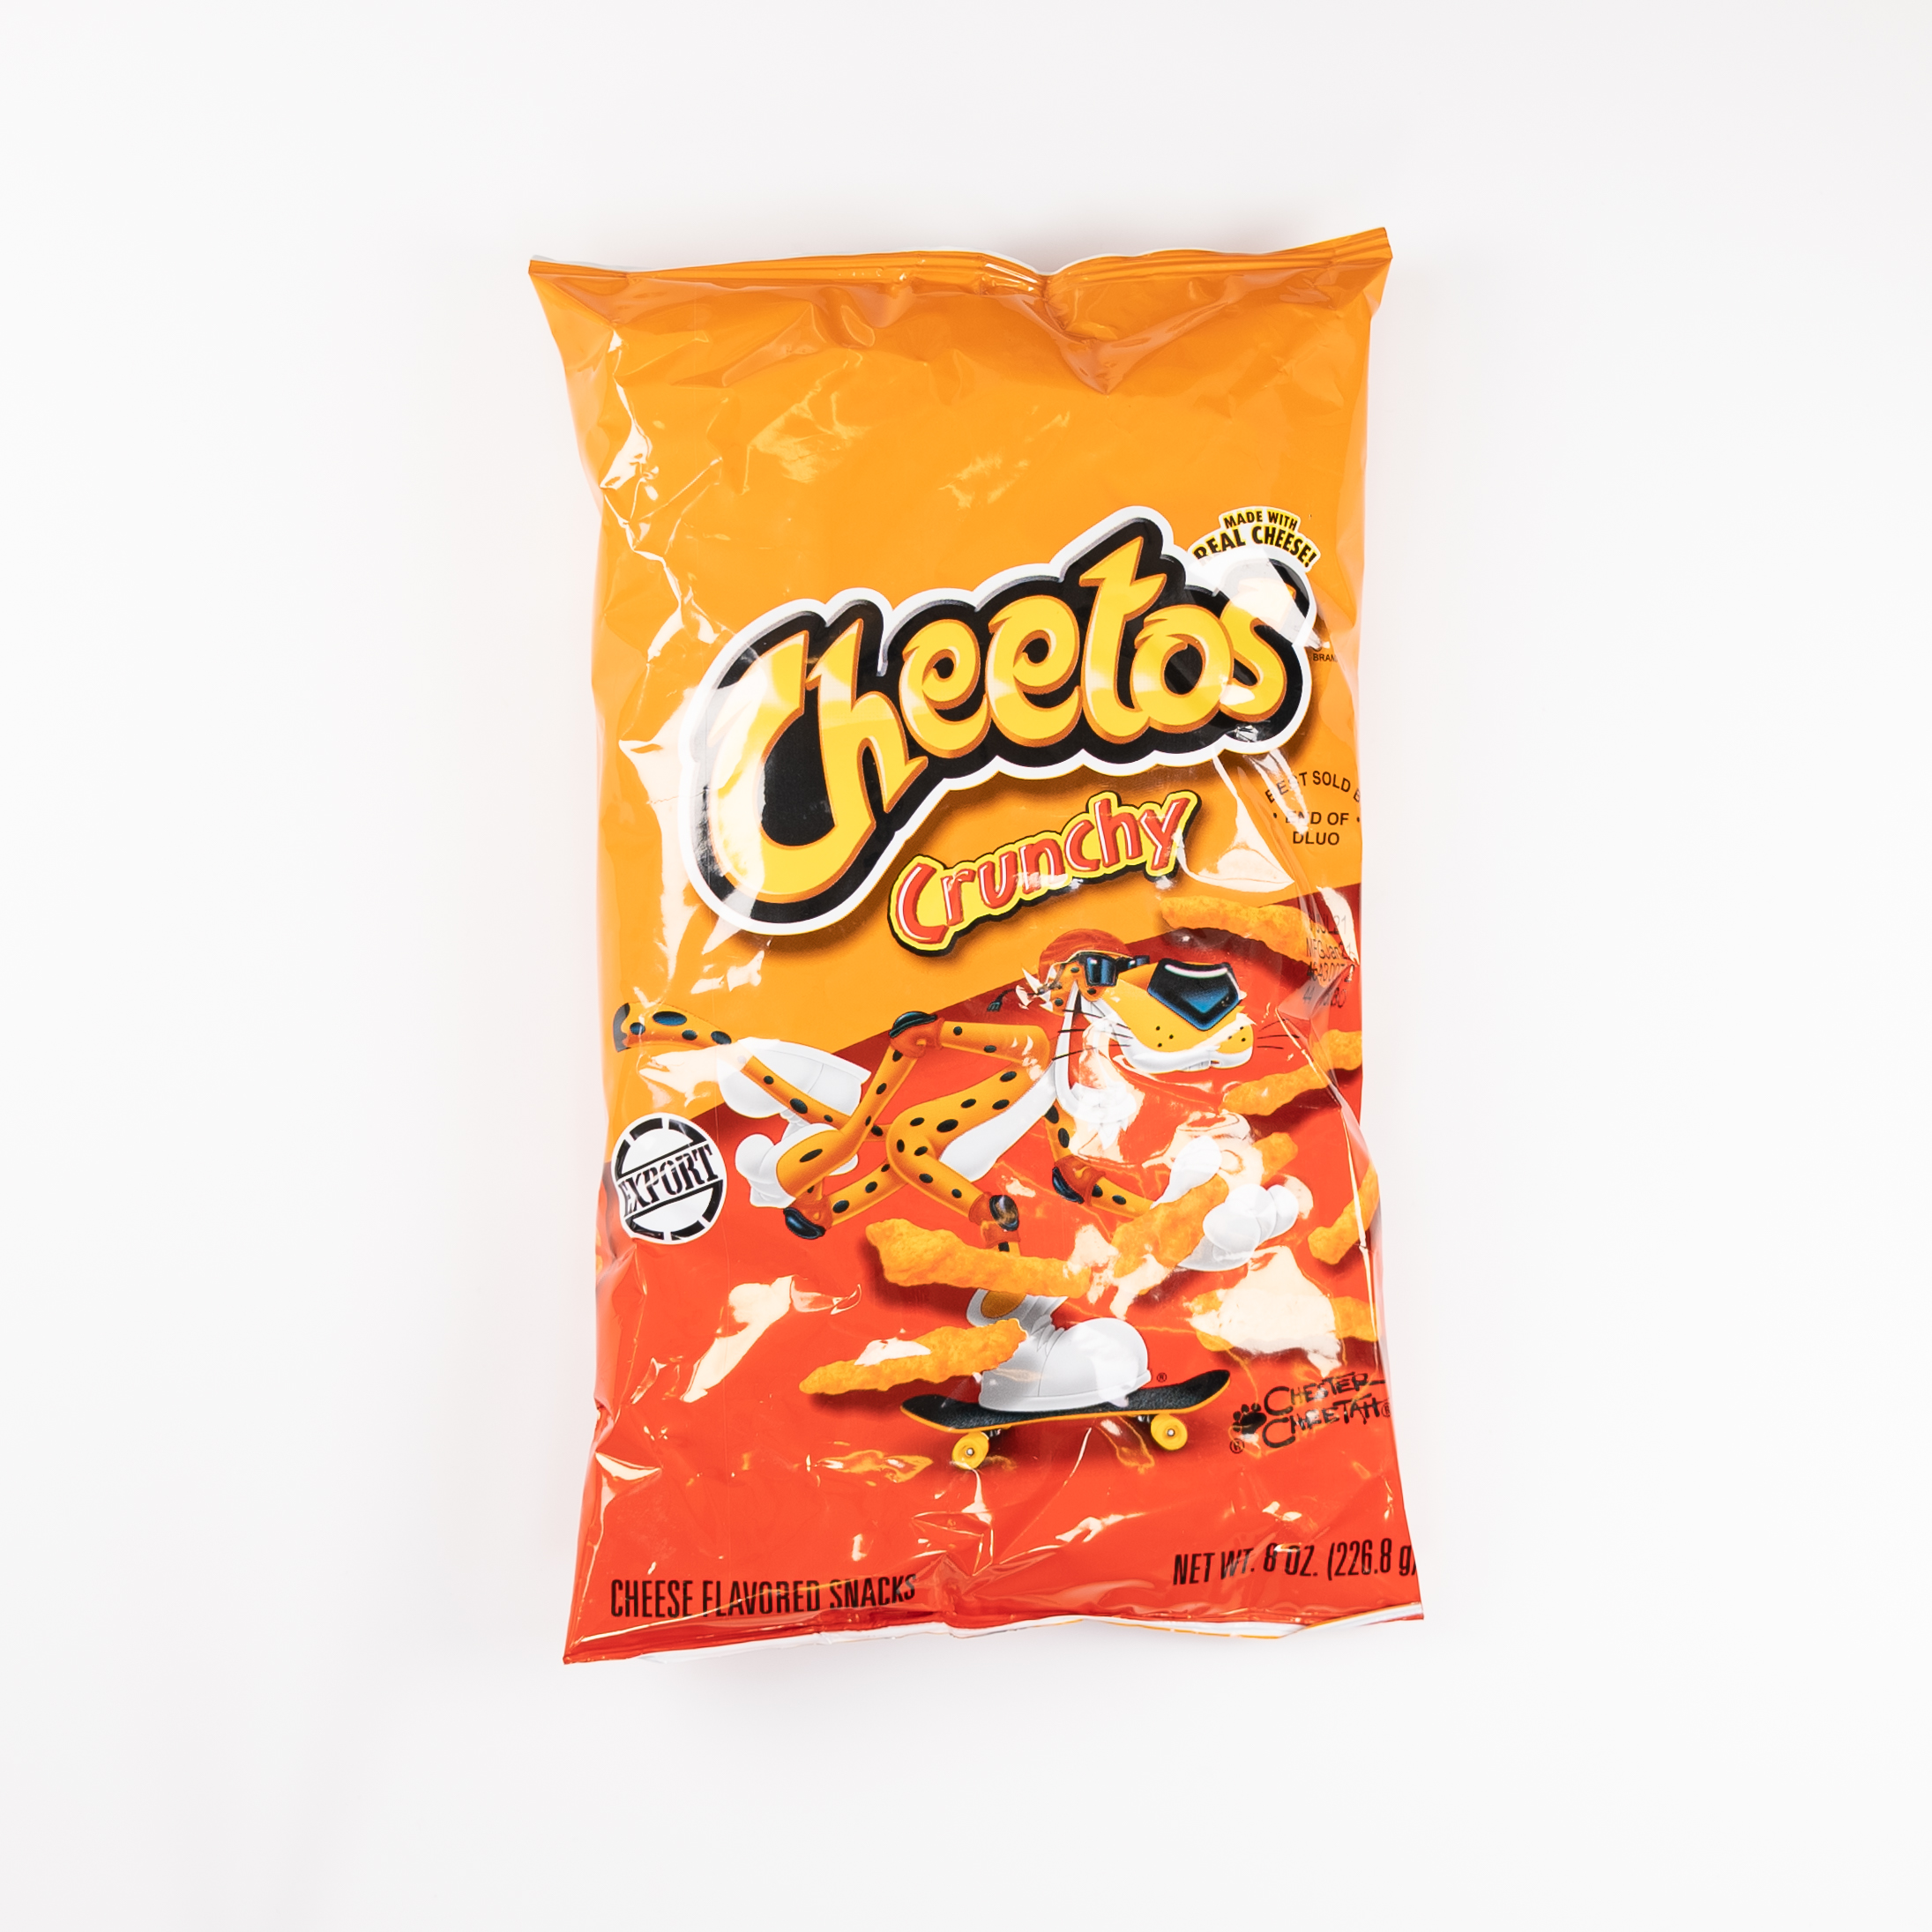 Cheetos Crunchy - Honningkrukken